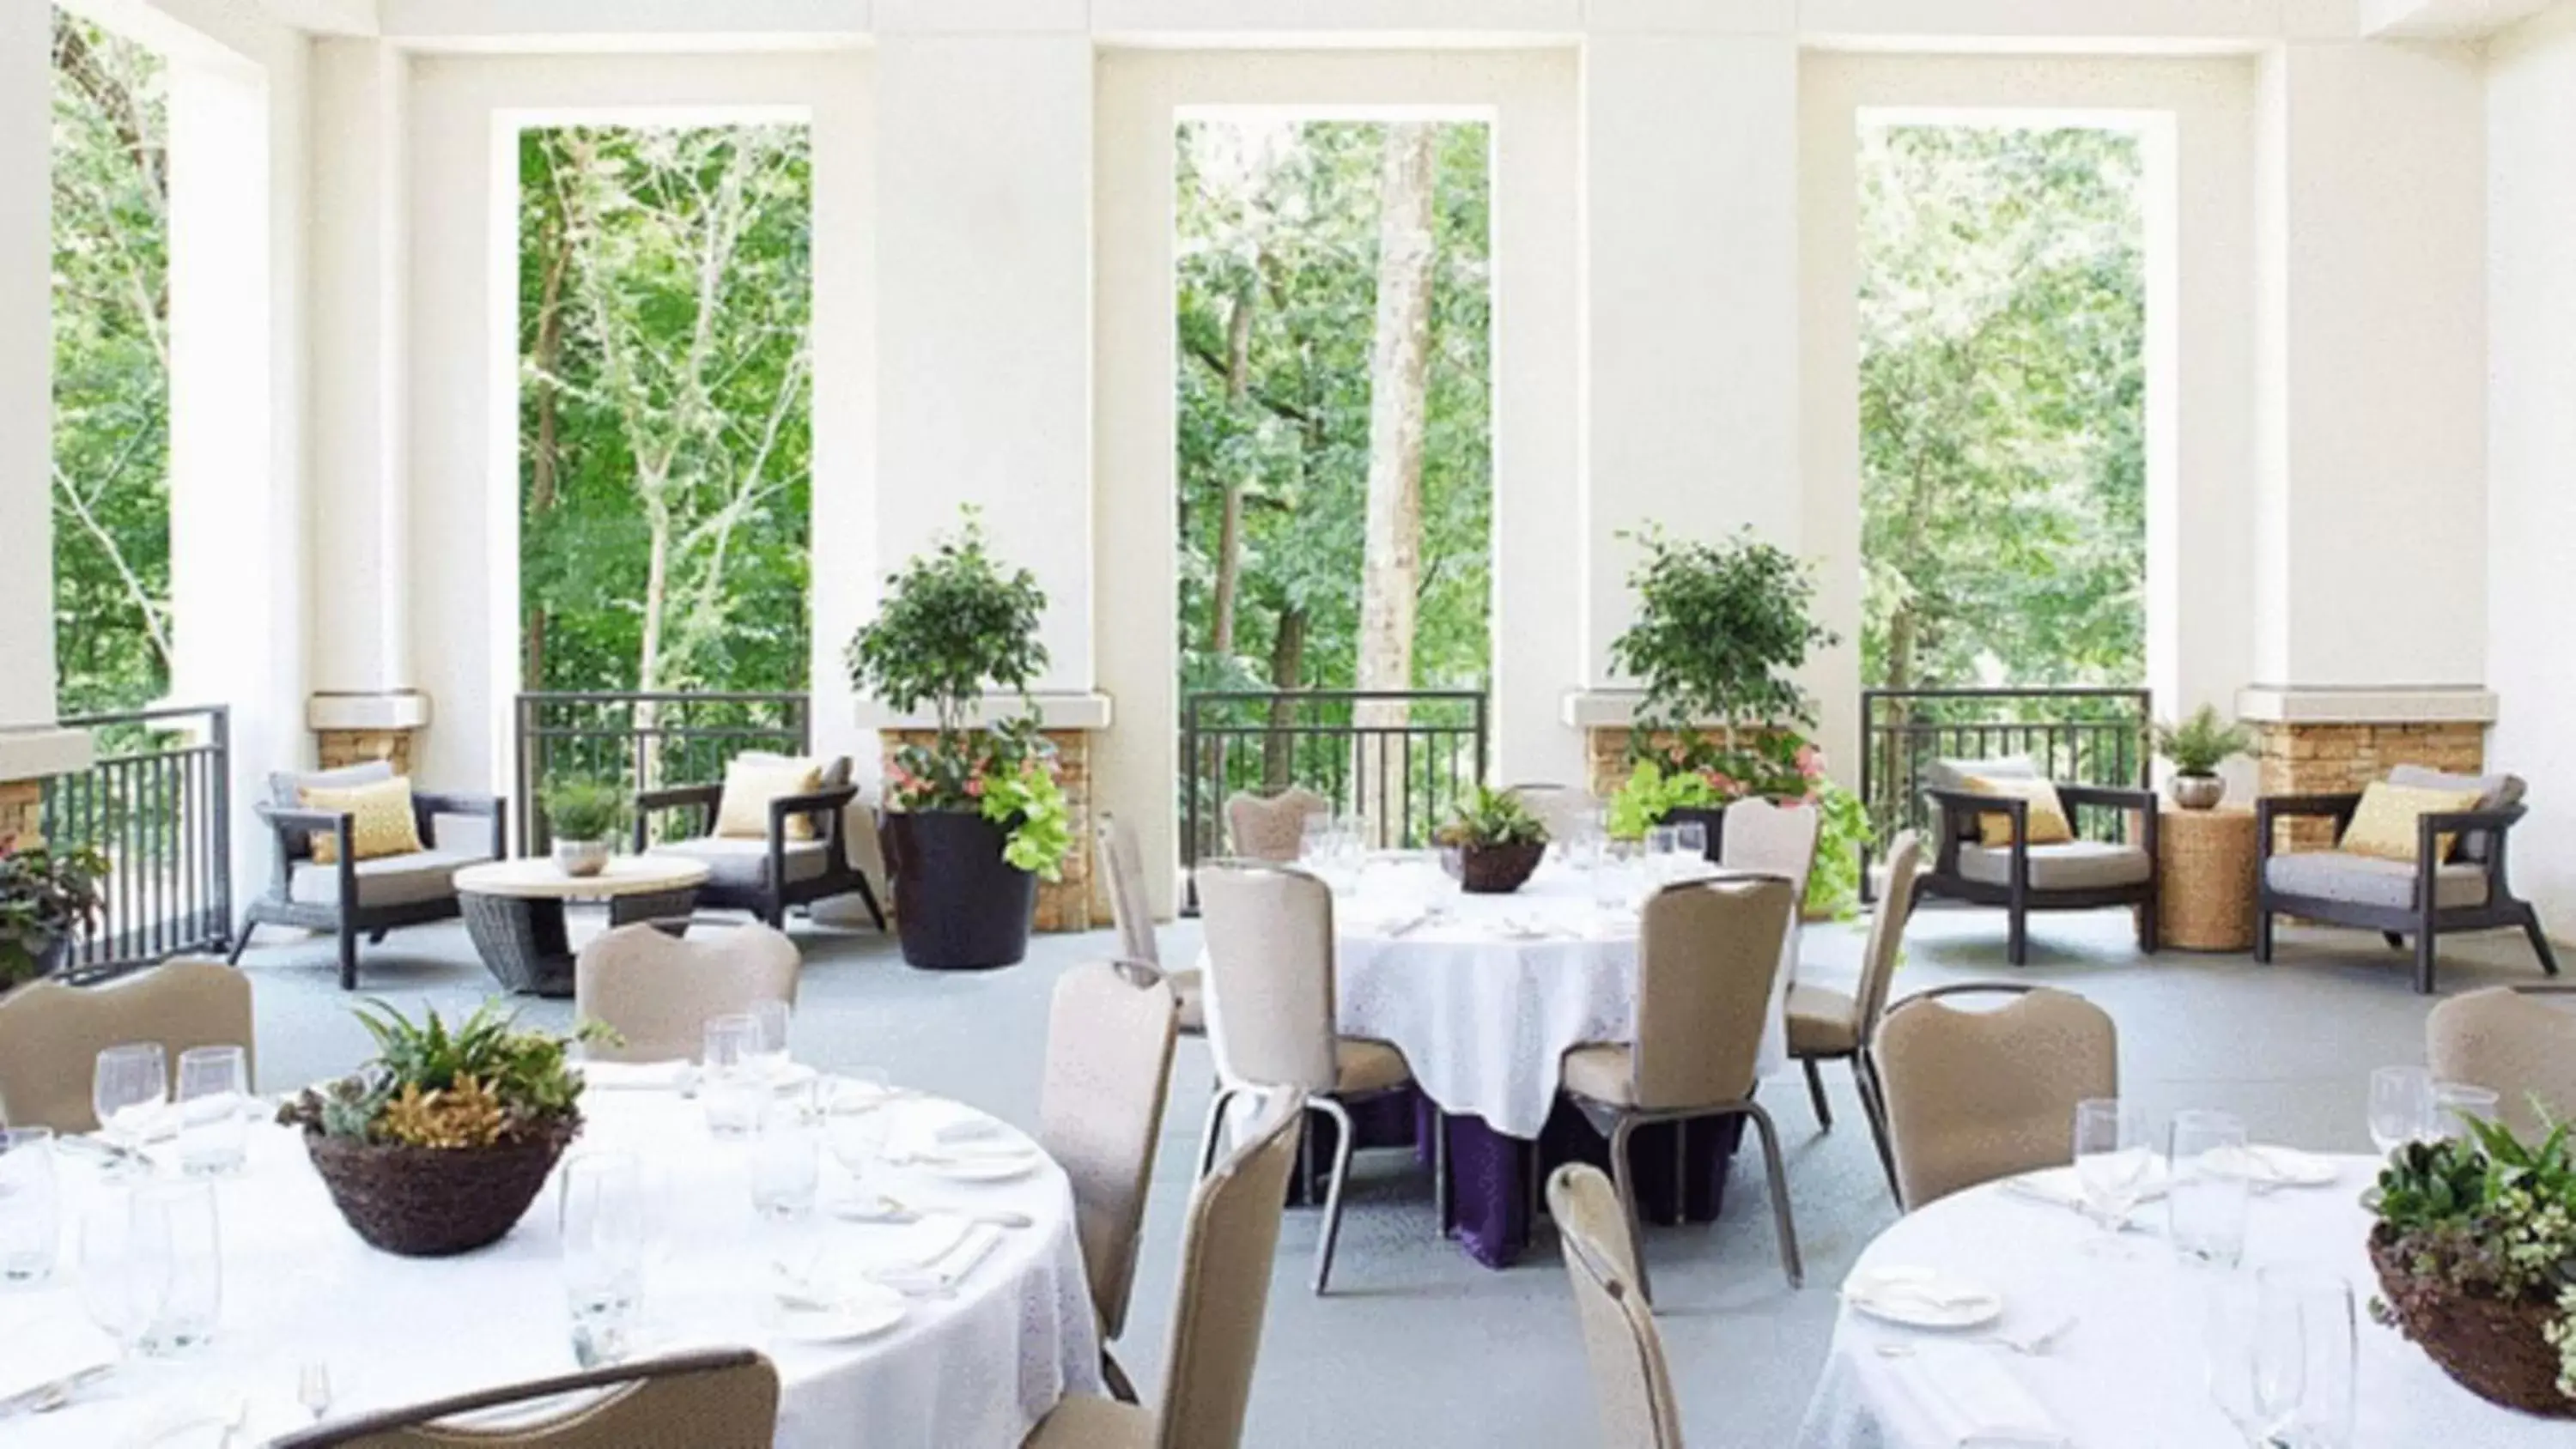 Banquet/Function facilities, Restaurant/Places to Eat in Hyatt Regency Atlanta Perimeter at Villa Christina